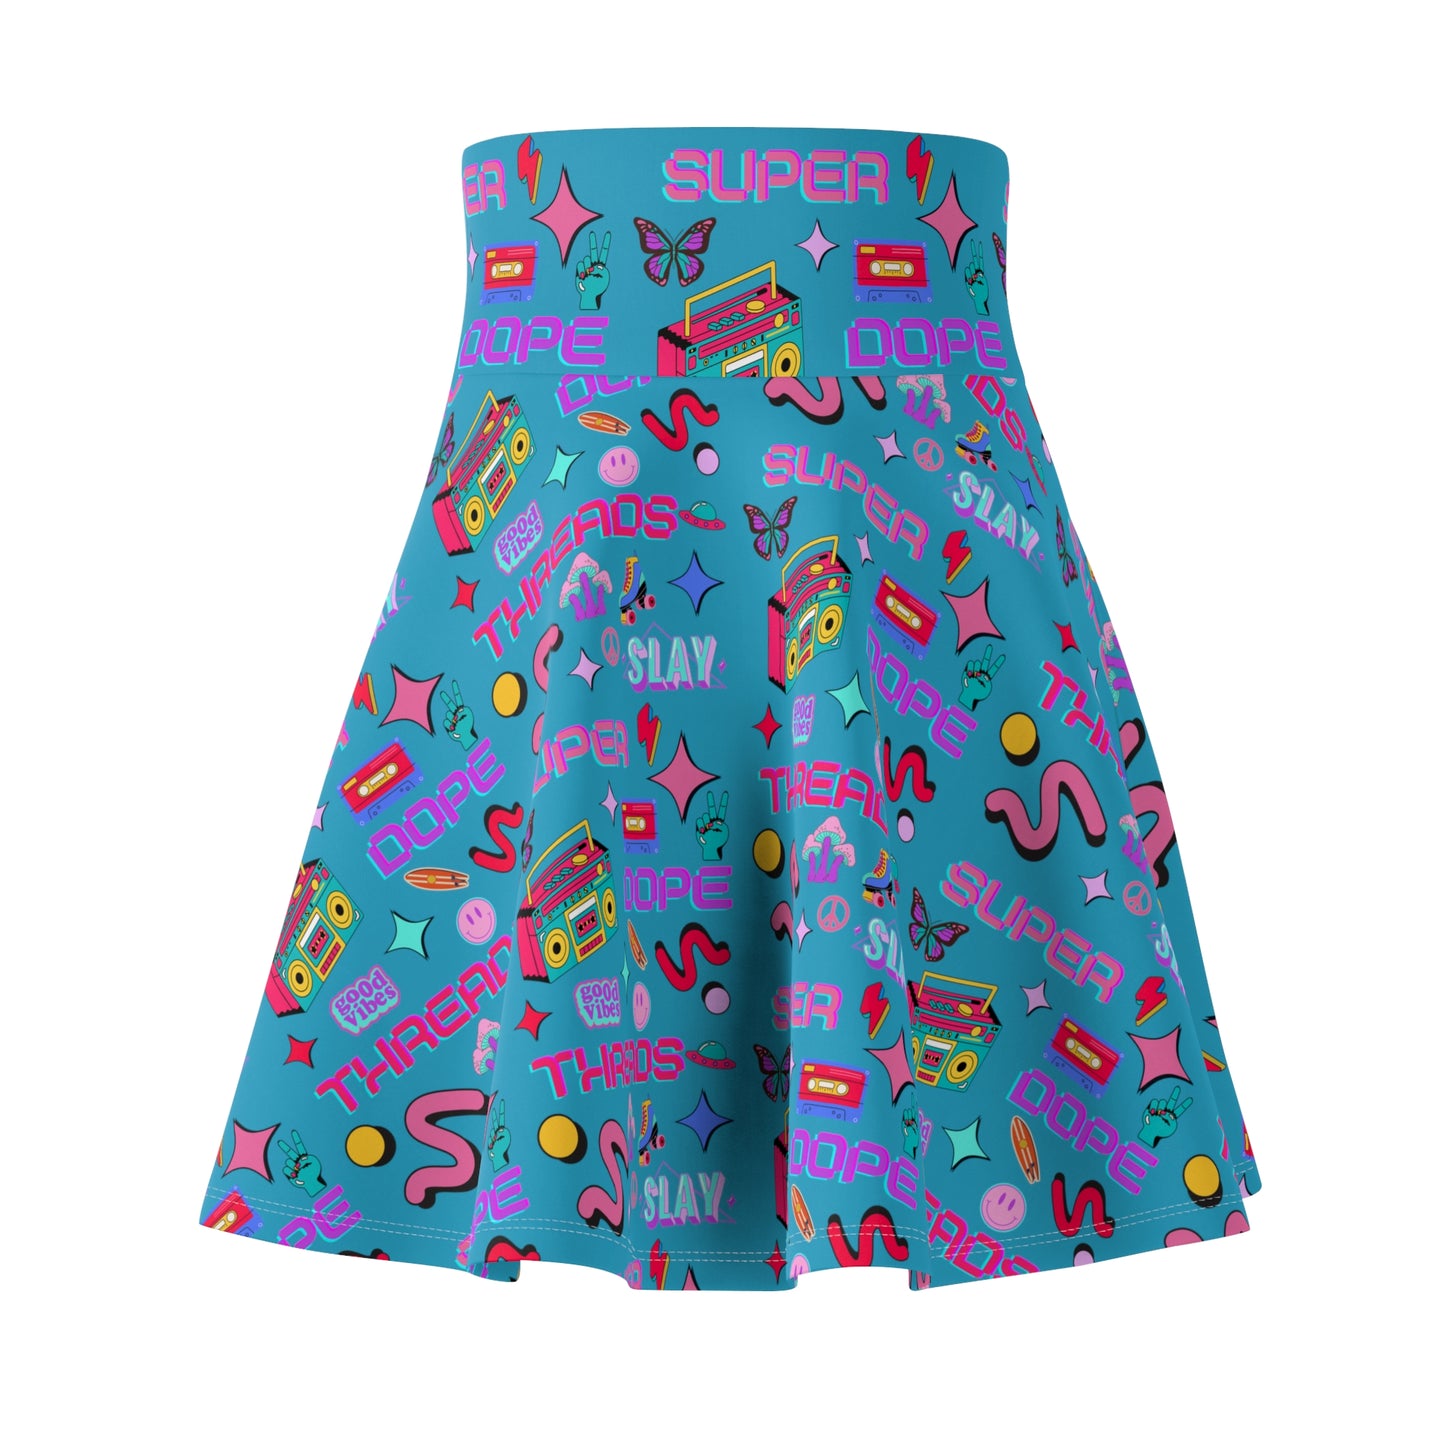 Super Dope Threads - Super Dope Ladies Skirt